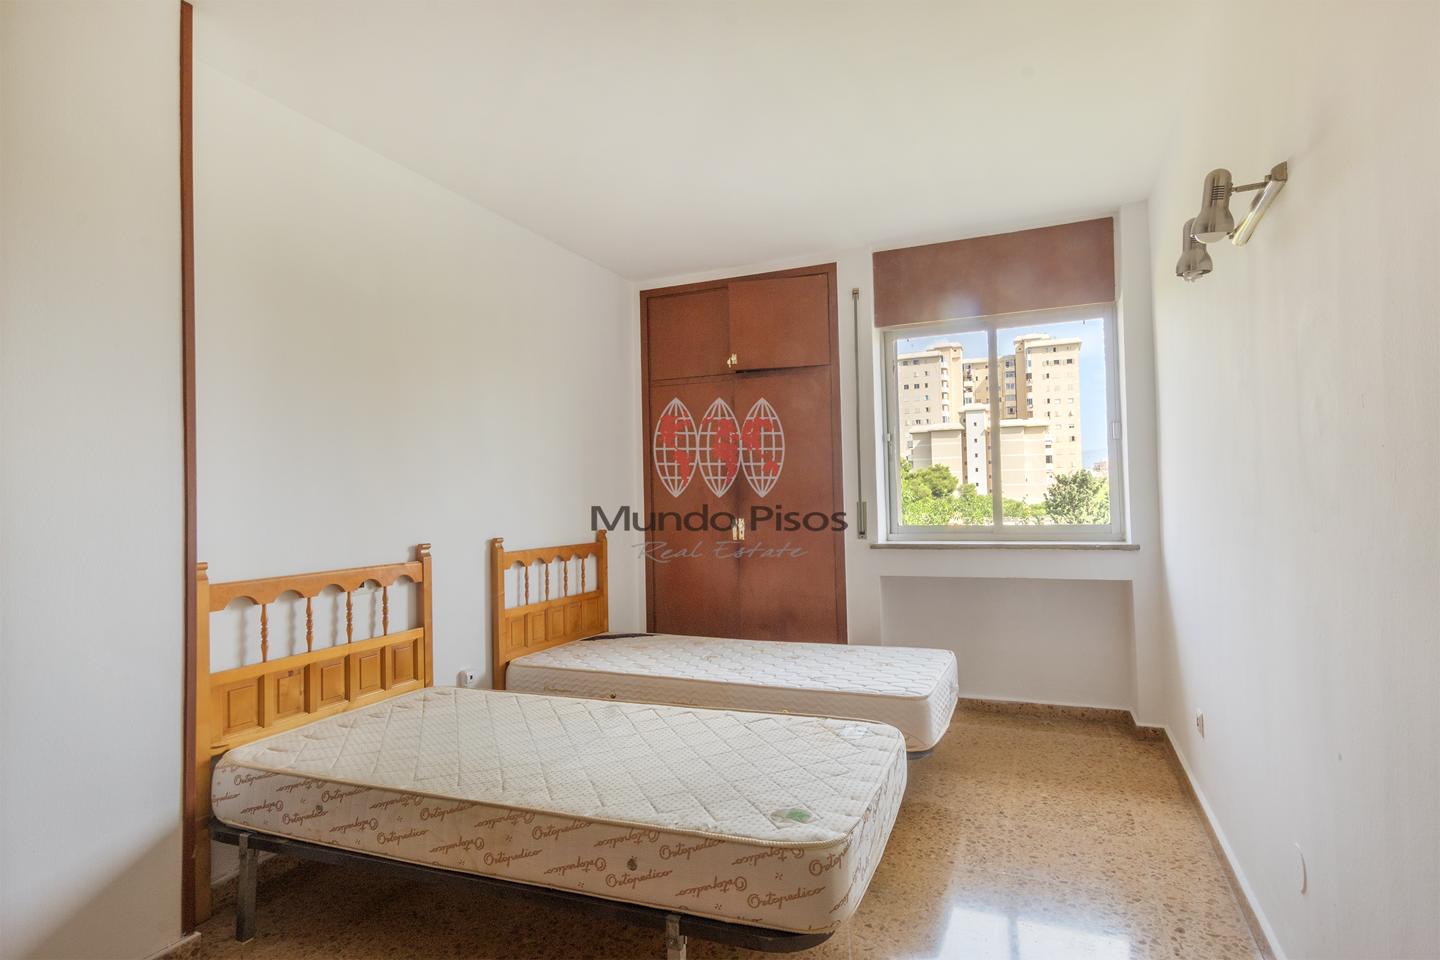 Third-floor apartment in Polígono de Levante, Palma de Mallorca, Balearic Islands